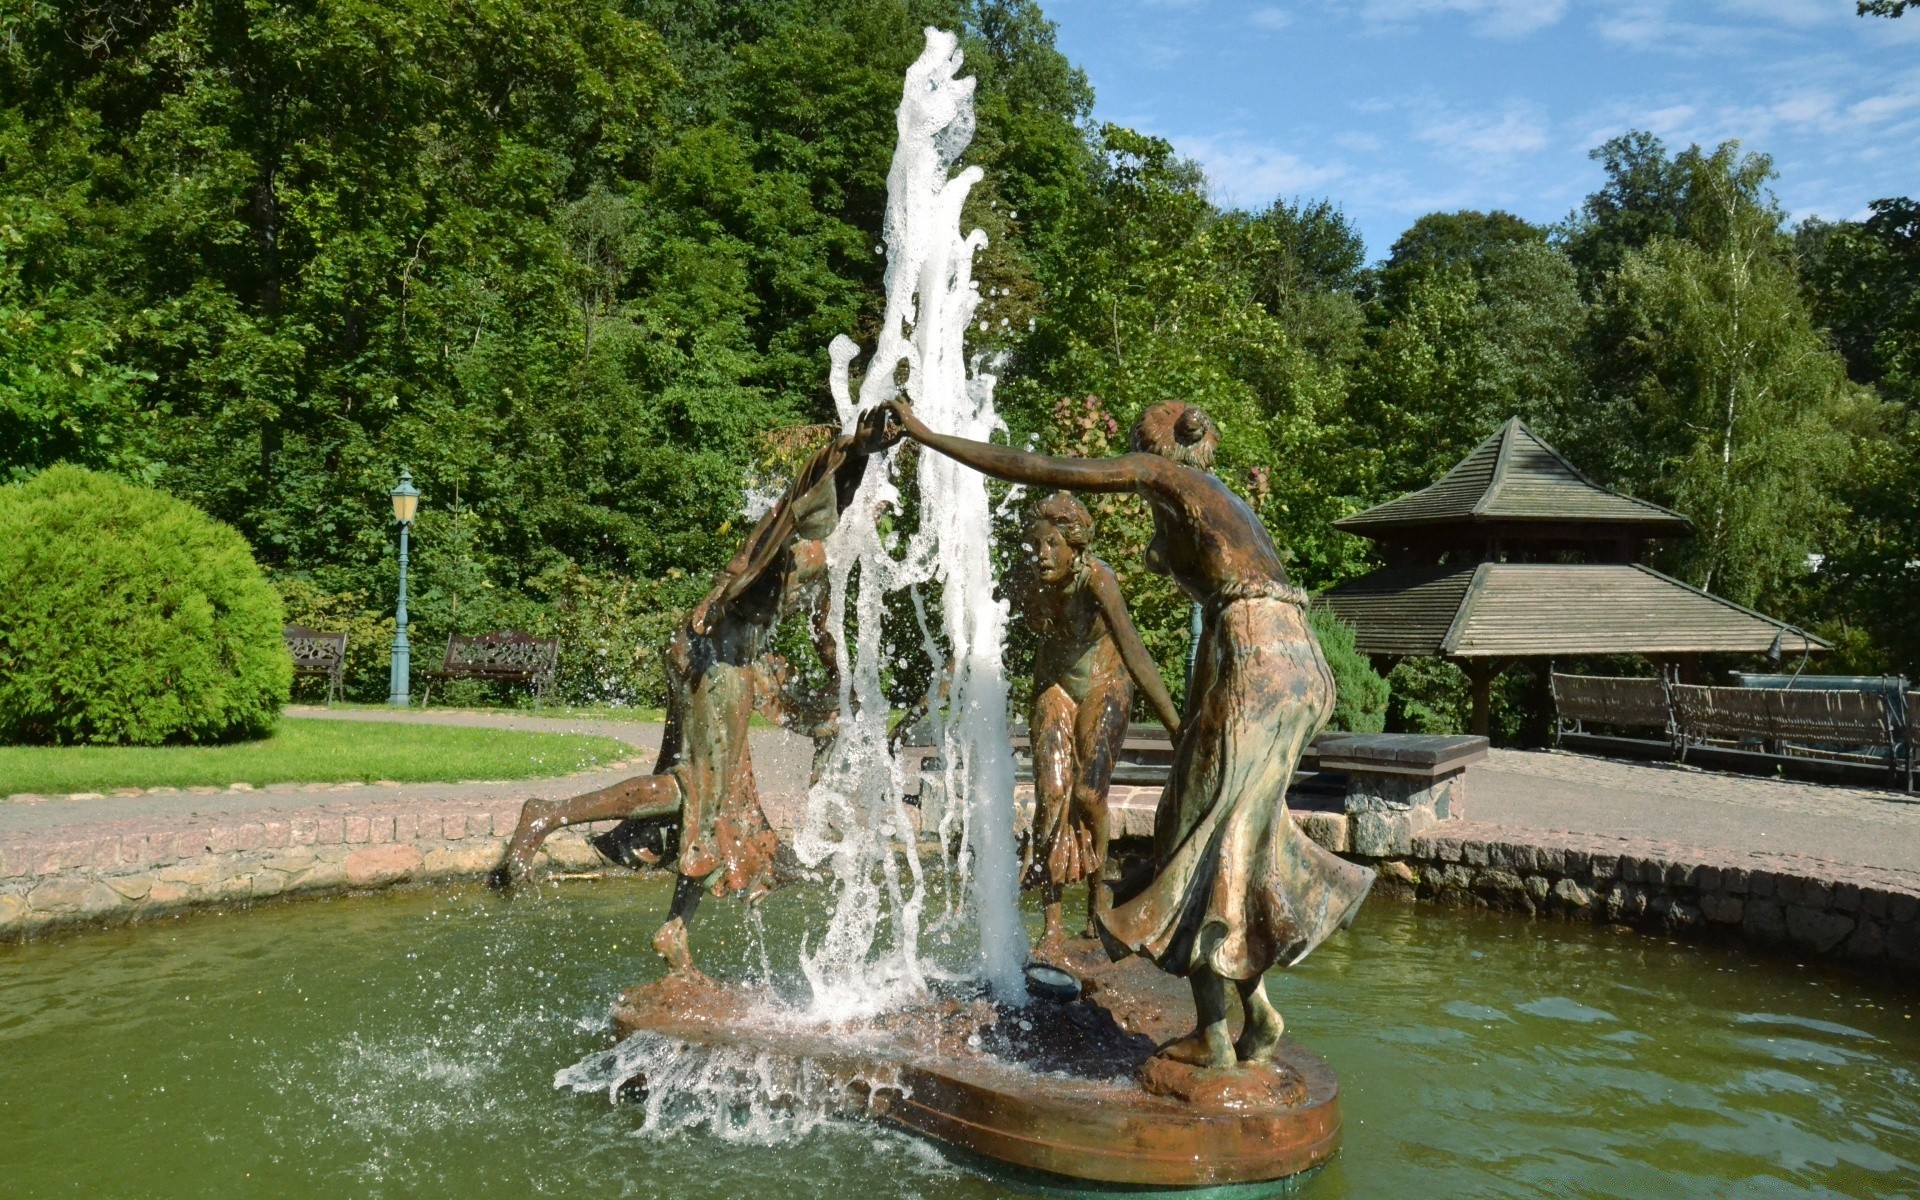 скульптуры воды фонтан путешествия река лето бассейн парк сад на открытом воздухе дерево озеро природа архитектура туризм древесины